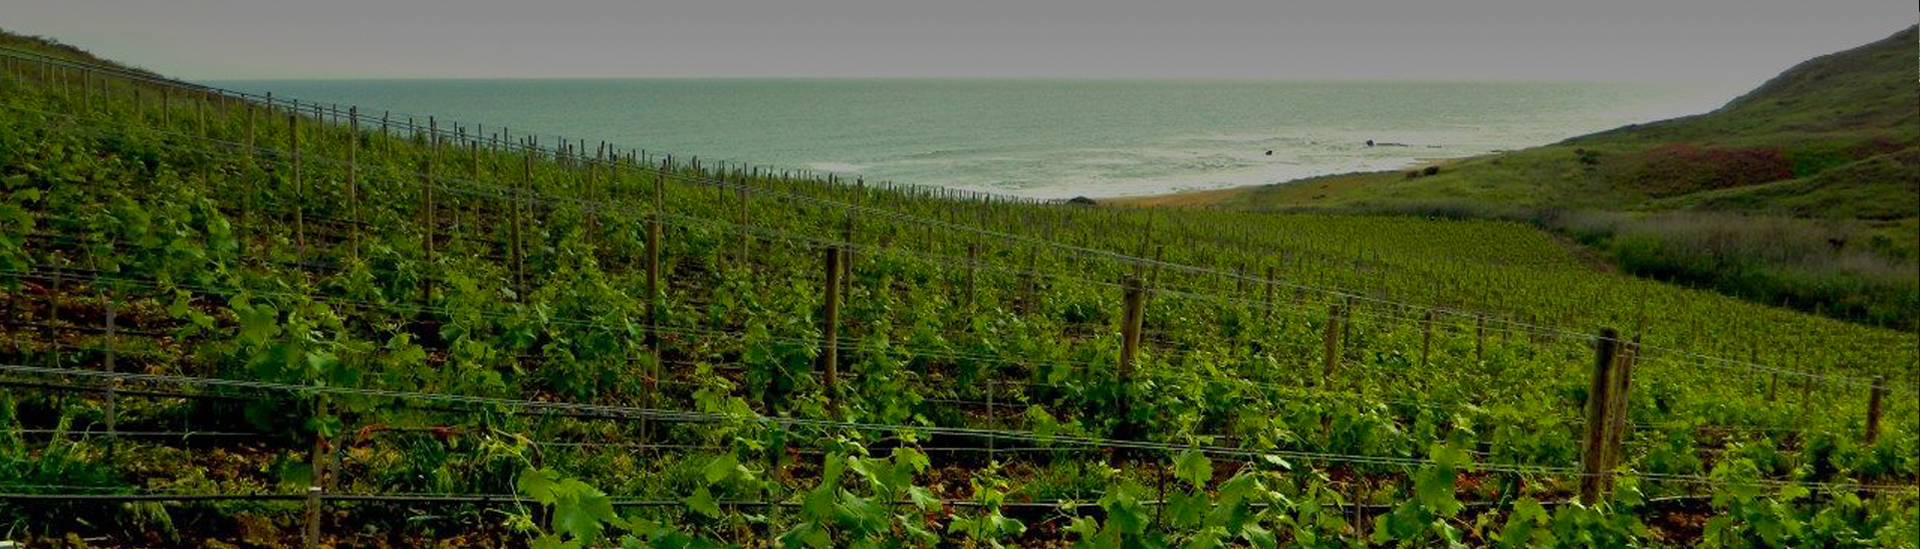 瑰丽玛蕾酒庄海边葡萄园的魅力